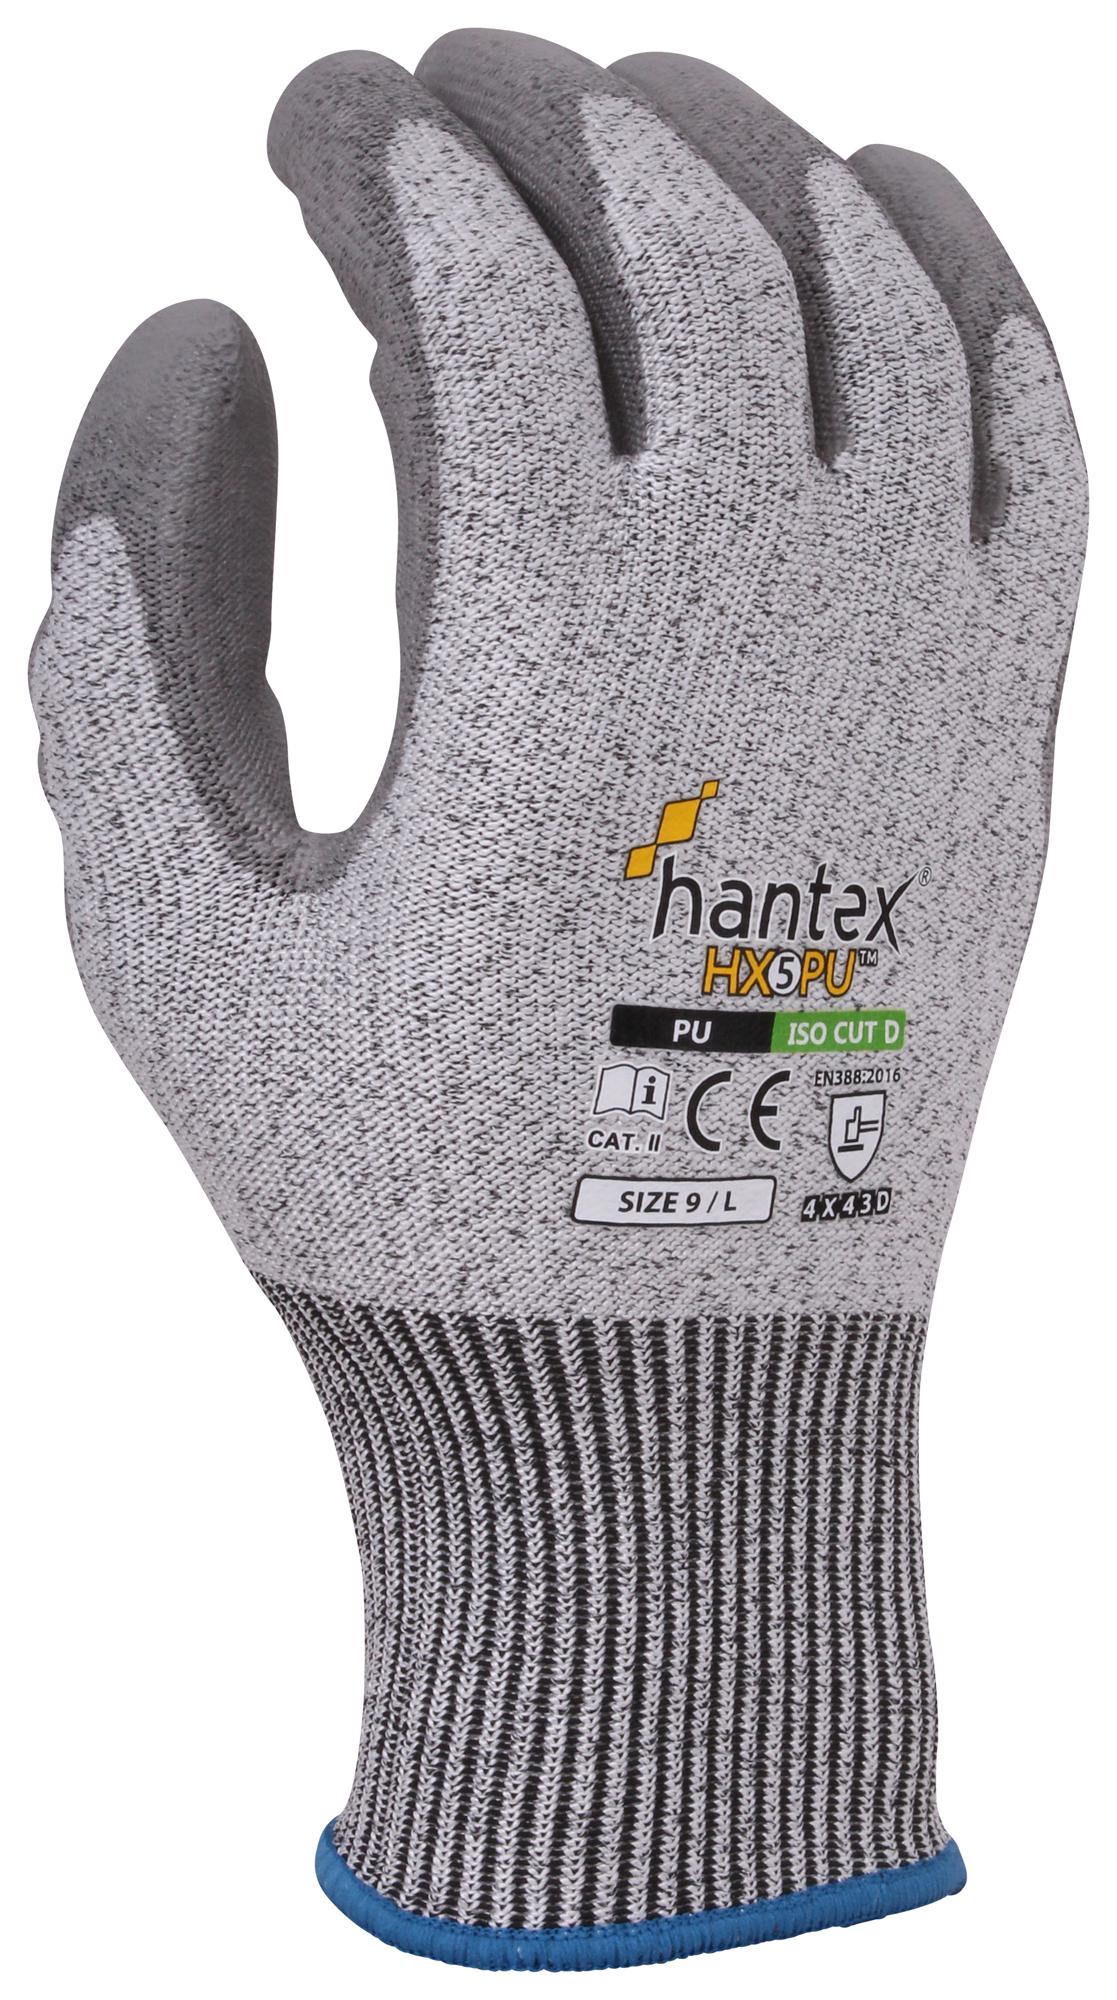 Uci G/hantex-Hx5/pu/11 Gloves, Hppe, Grey, Xxl